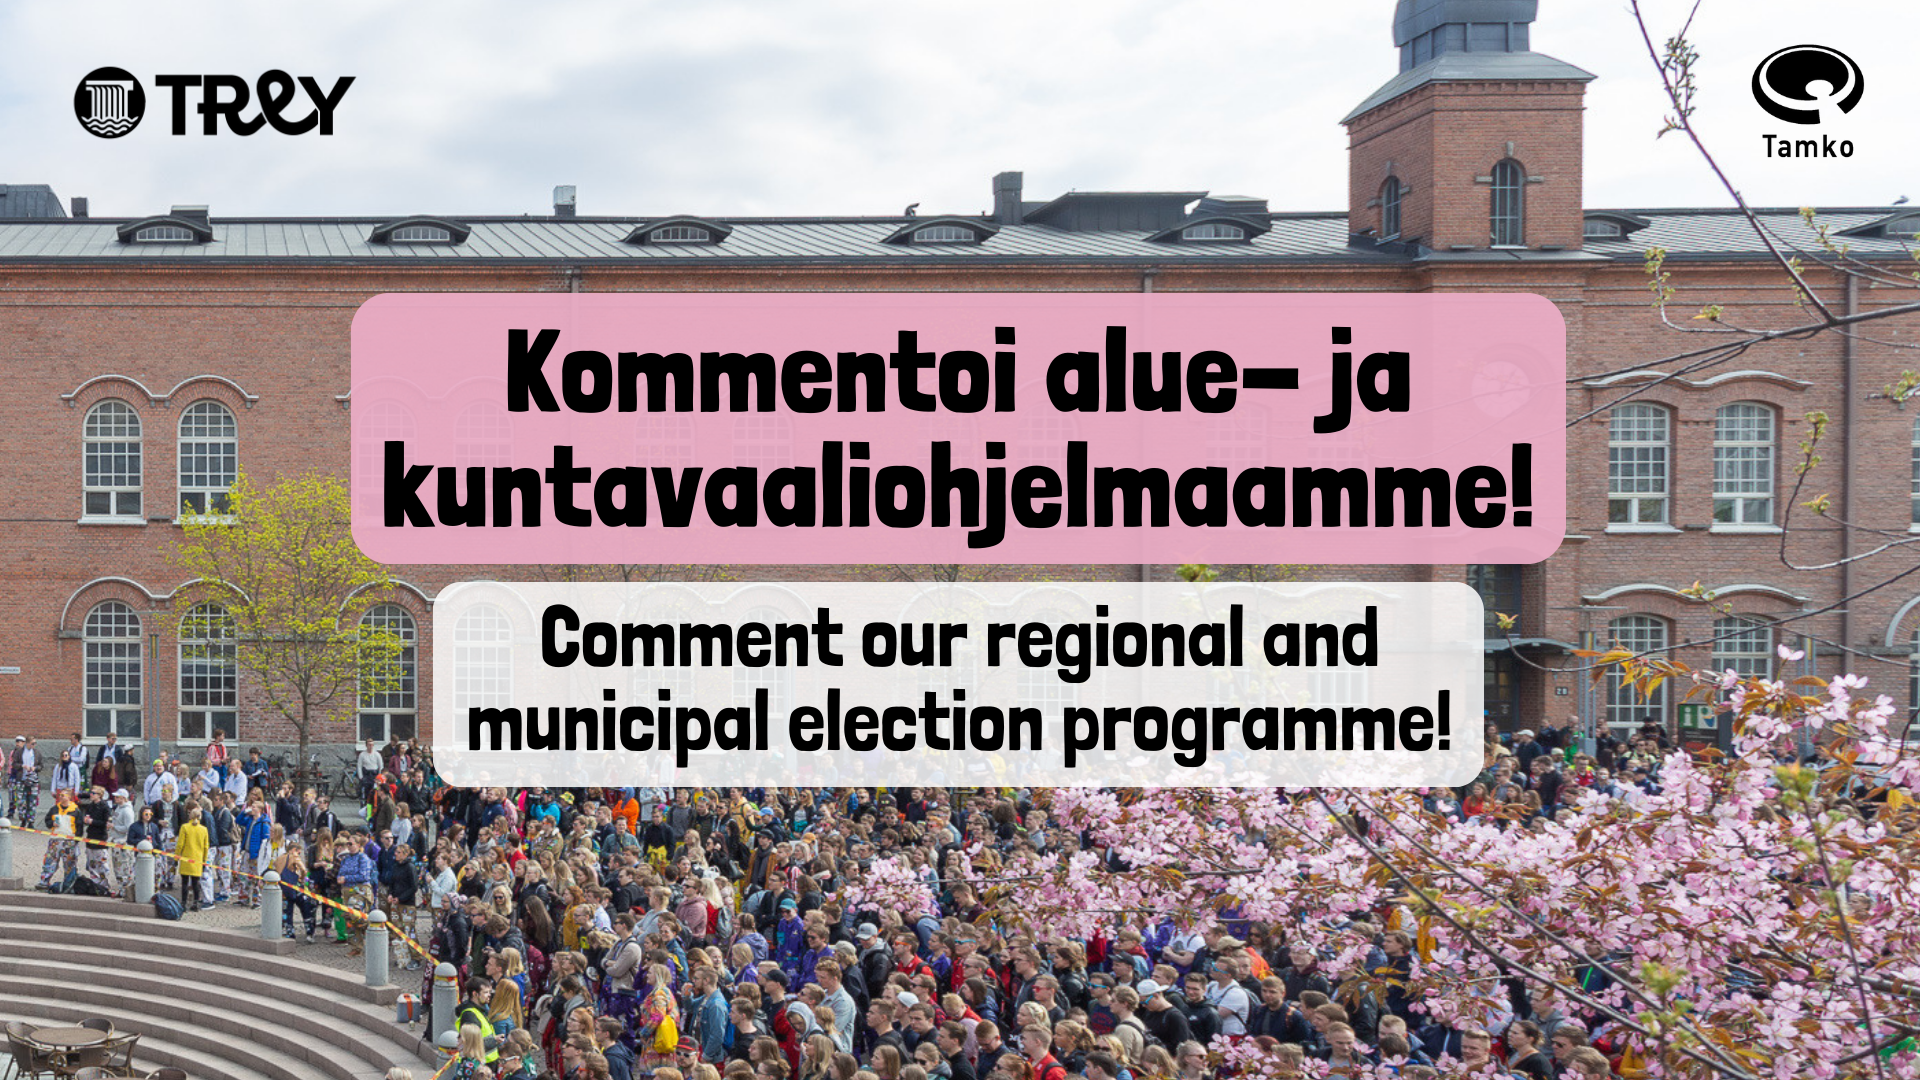 Kommentoi alue- ja kuntavaaliohjelmaamme!